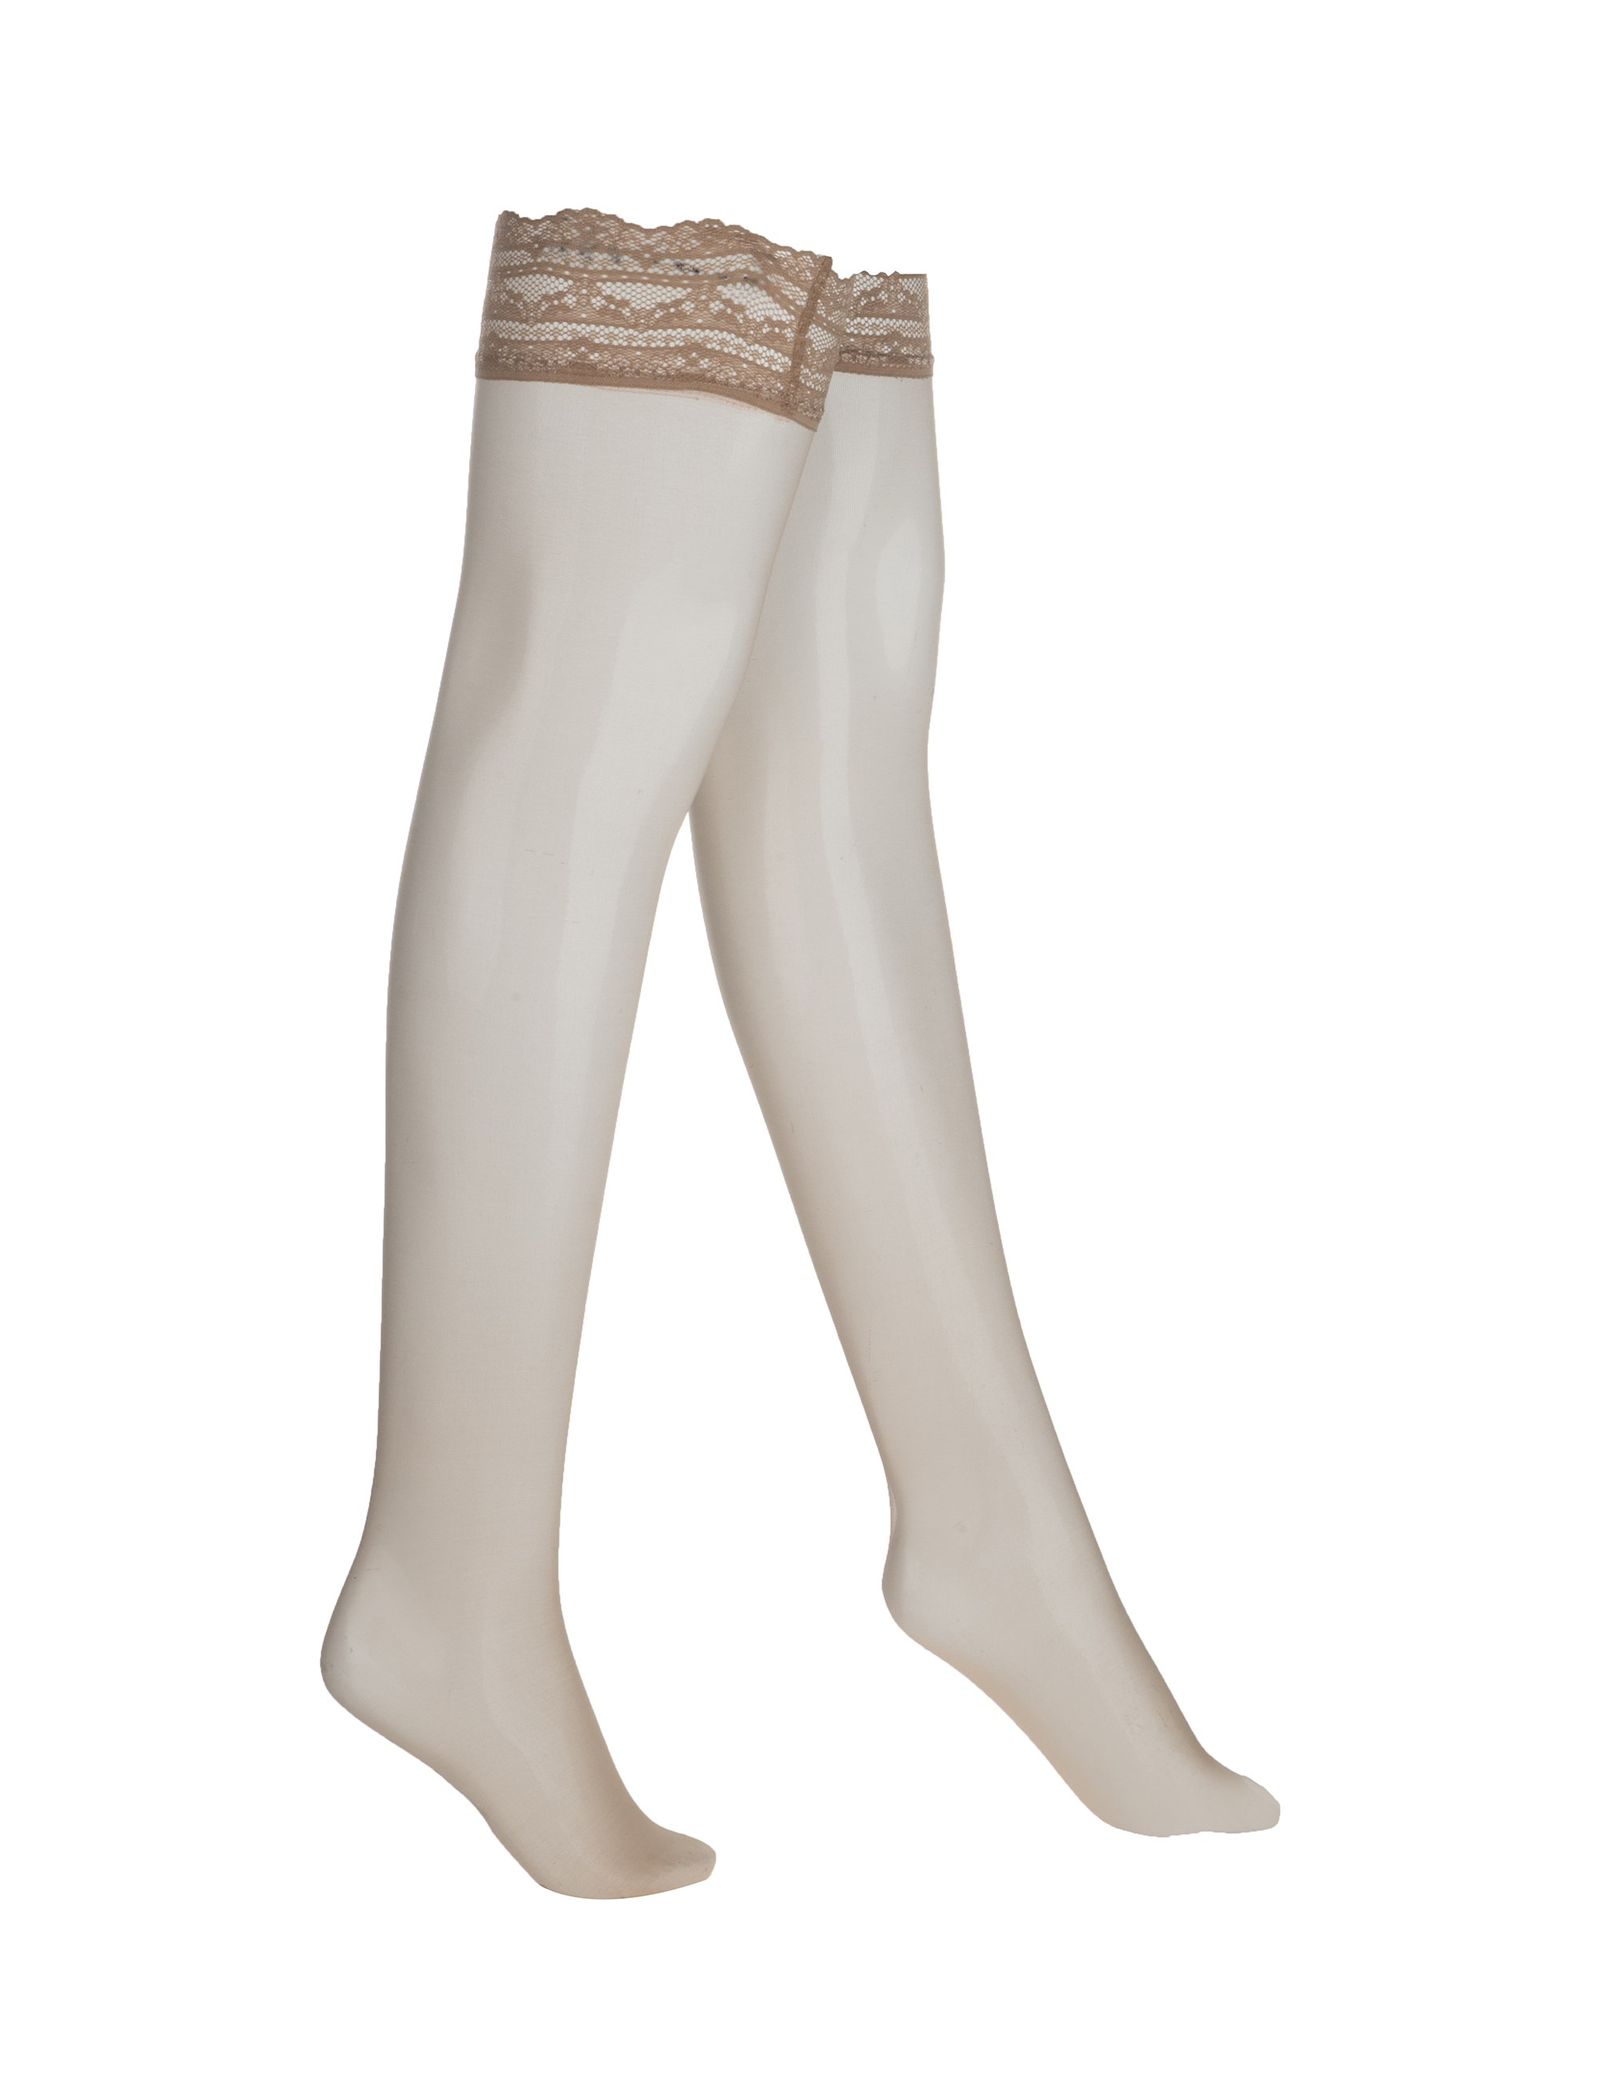 جوراب ساق بلند زنانه - اتام - کرم - 2